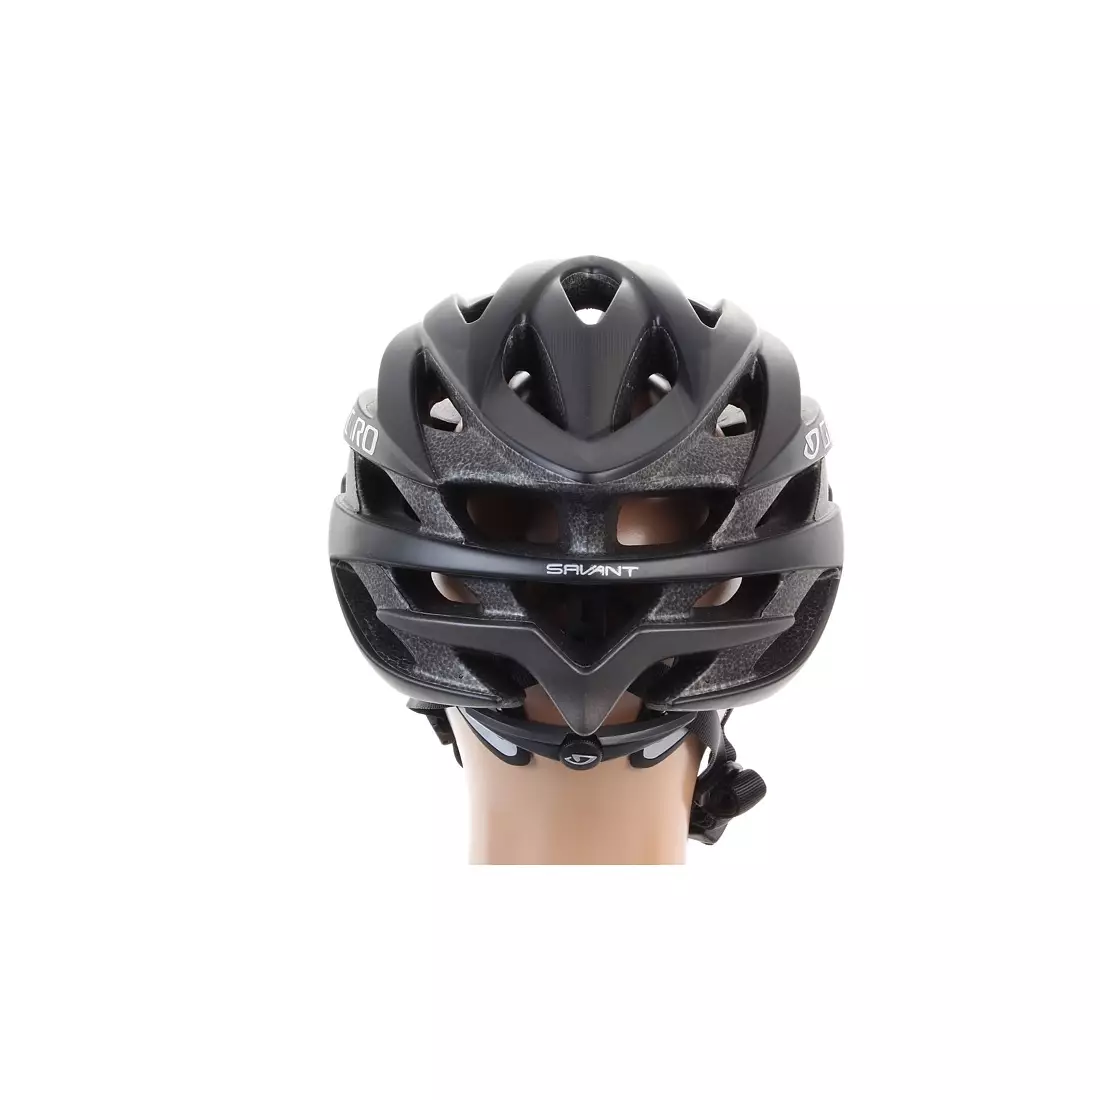 GIRO SAVANT - bicycle, road helmet